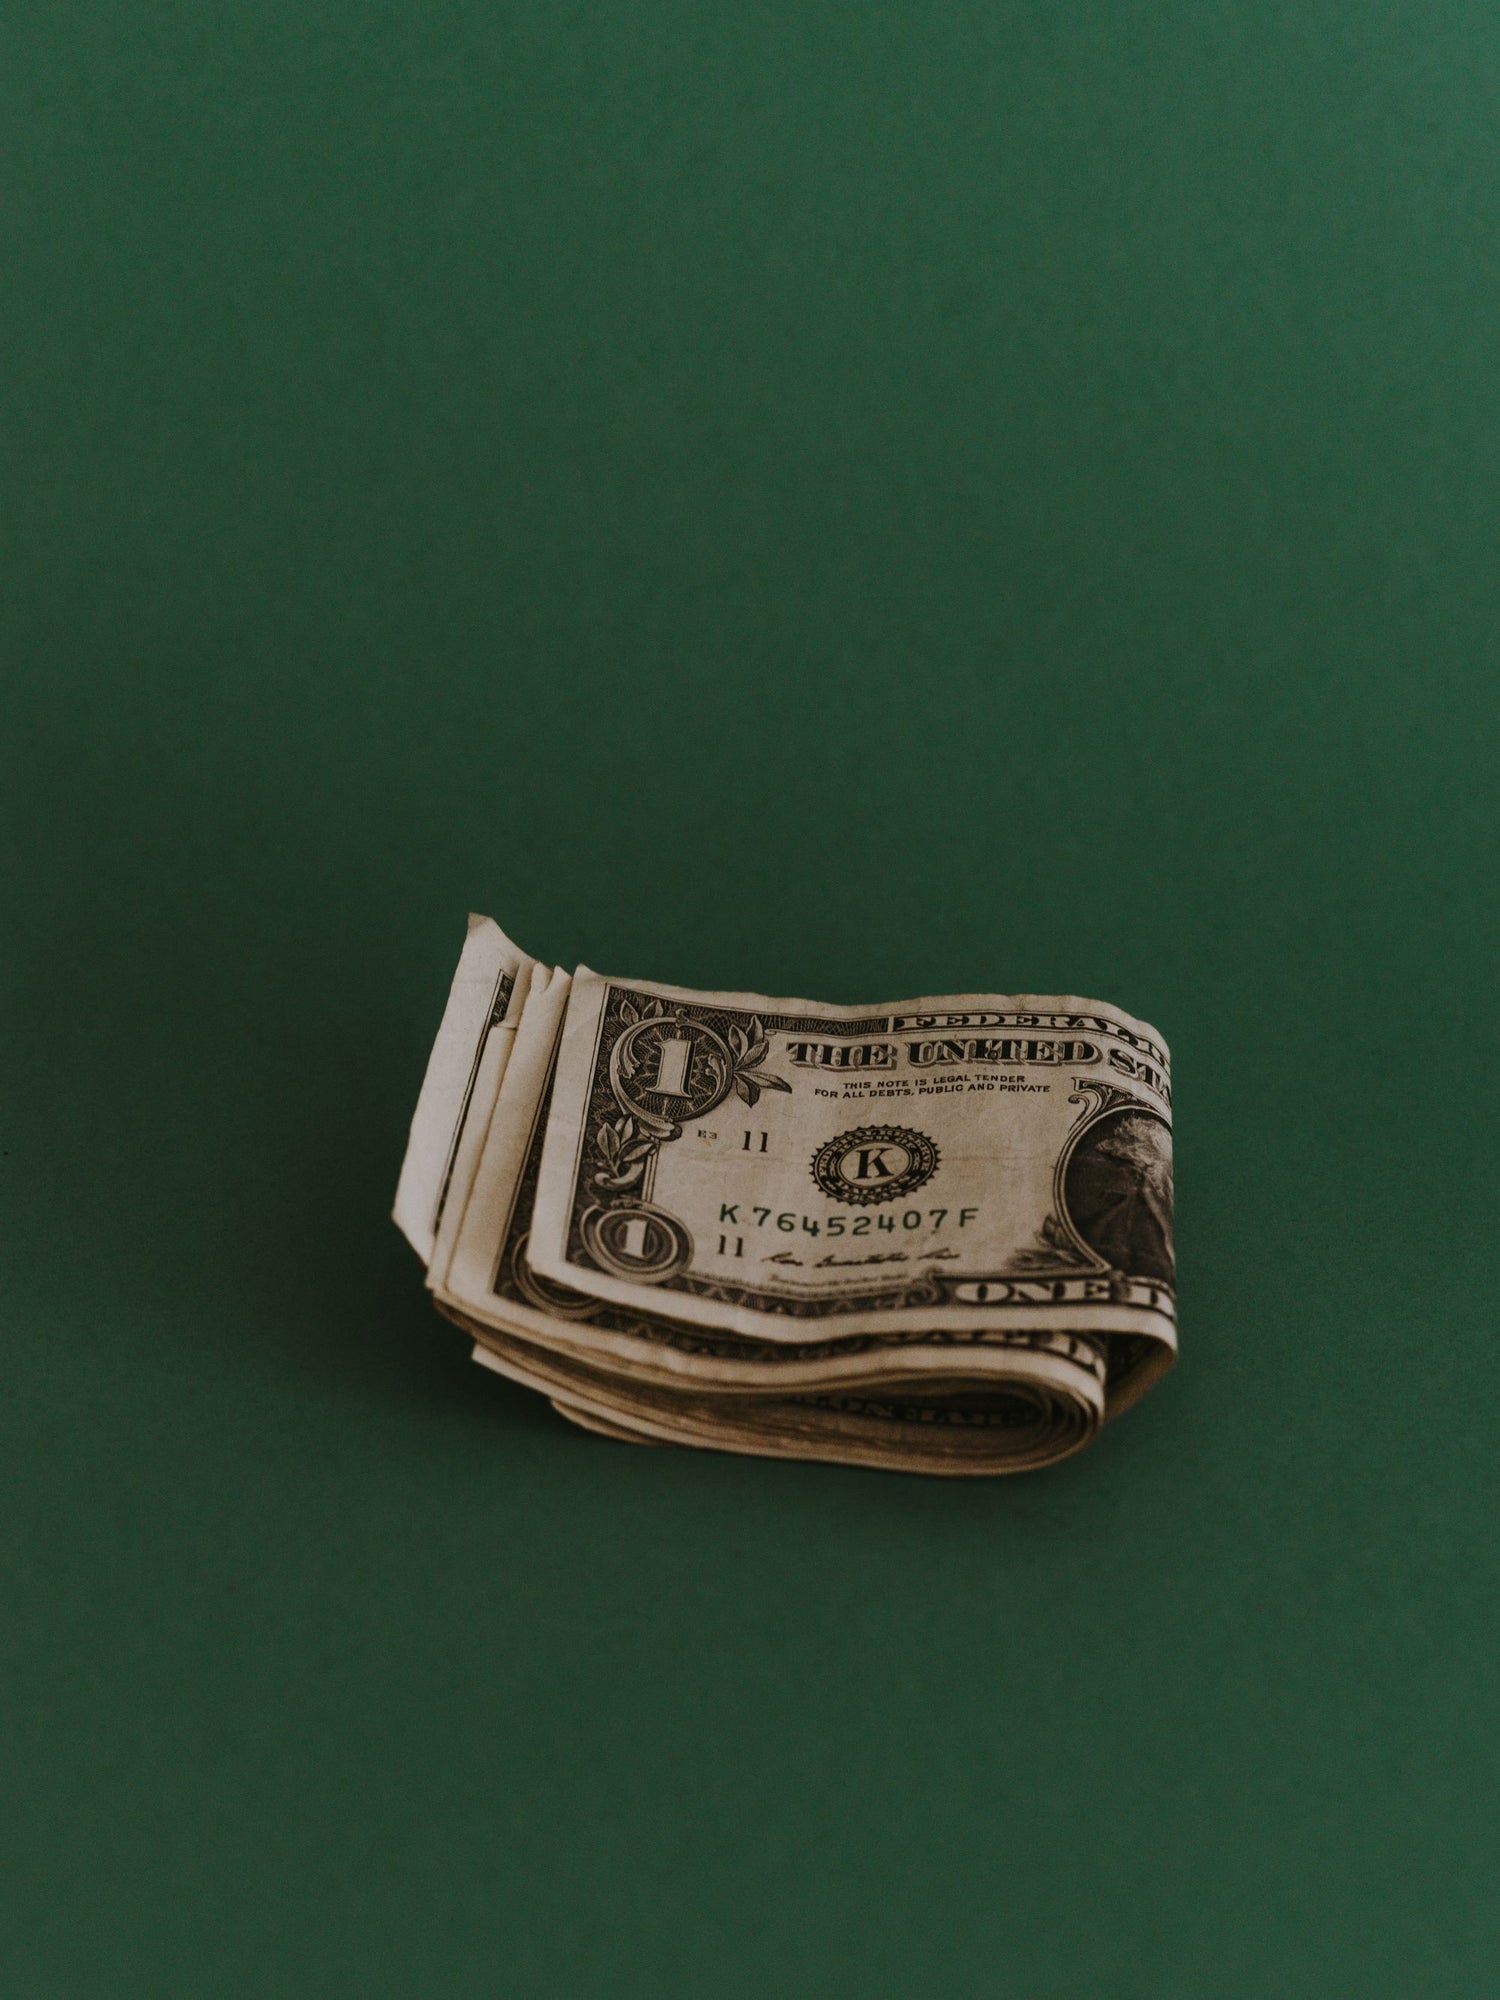 Ein Dollar Scheine auf grünem Hintergrund